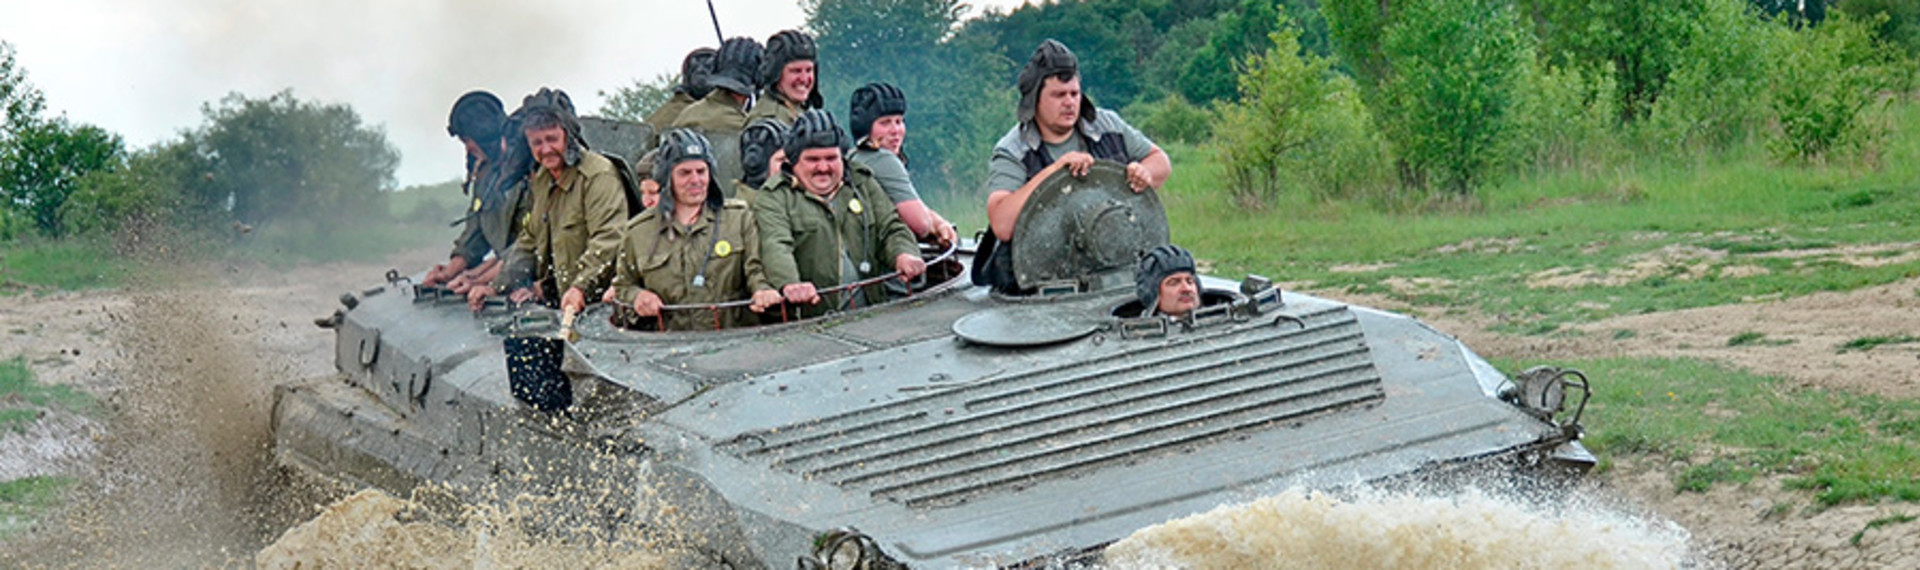 Udforsk militære kampvogne - Guidet tur og kørsel i BMP-1 kampvogn